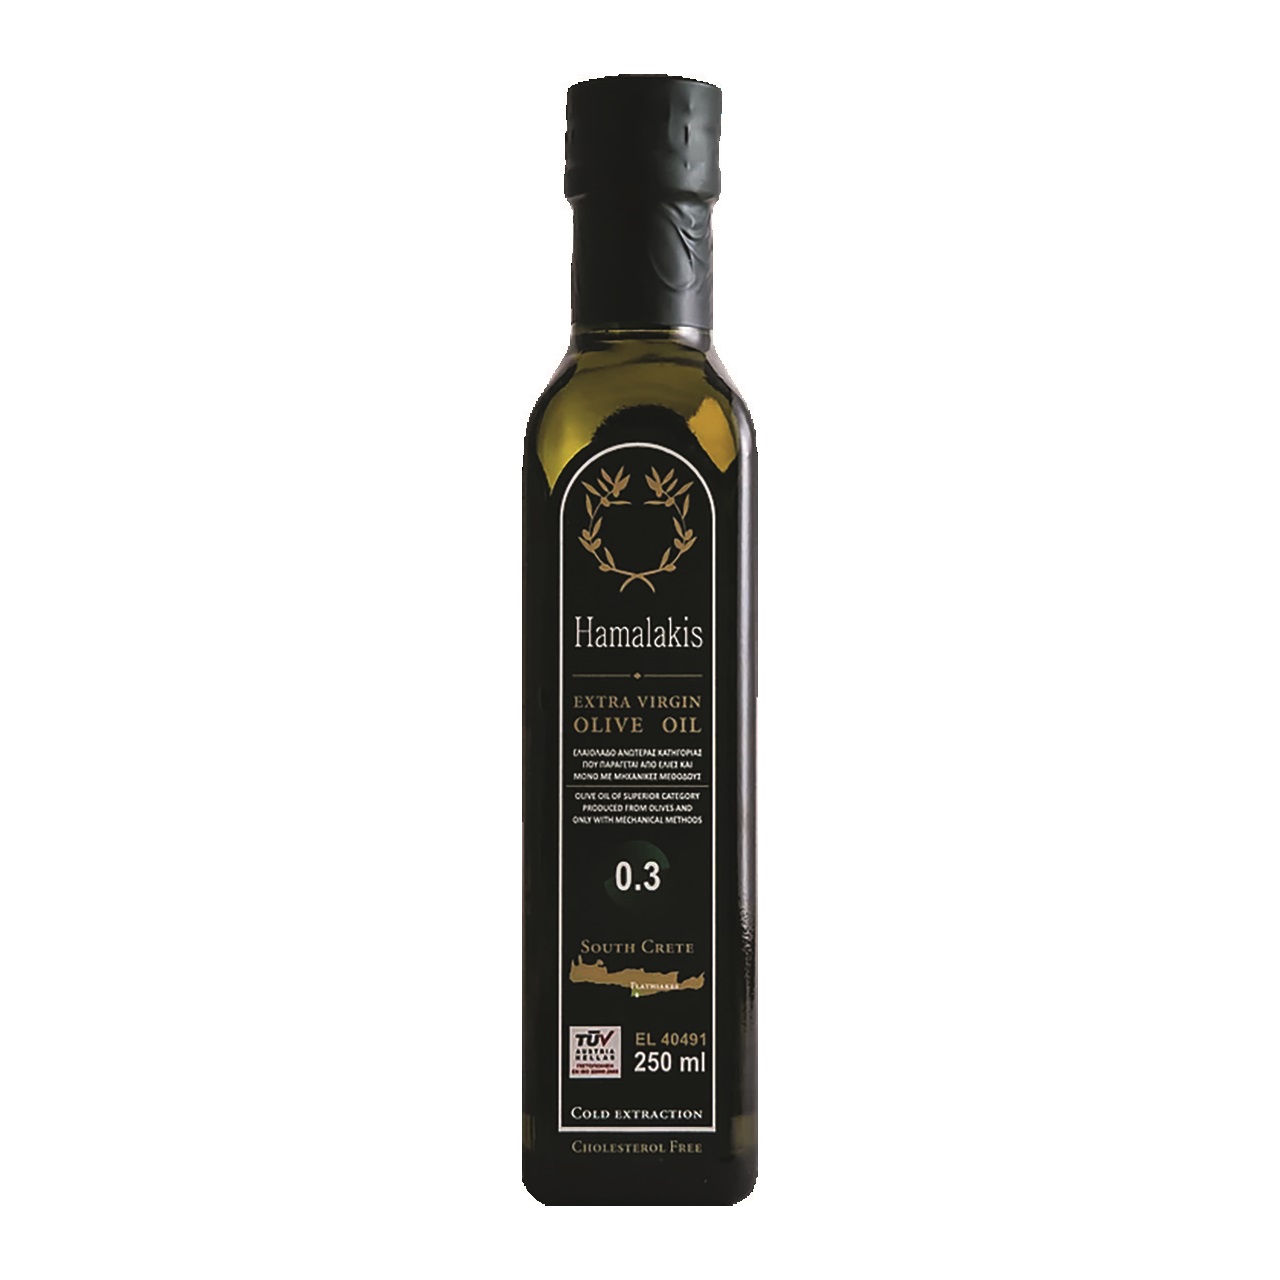 Оливковое масло отзывы покупателей. Масло оливковое hamalakis. Olivolio масло оливковое. Гарсия оливковое масло ev. Греция hamalakis.